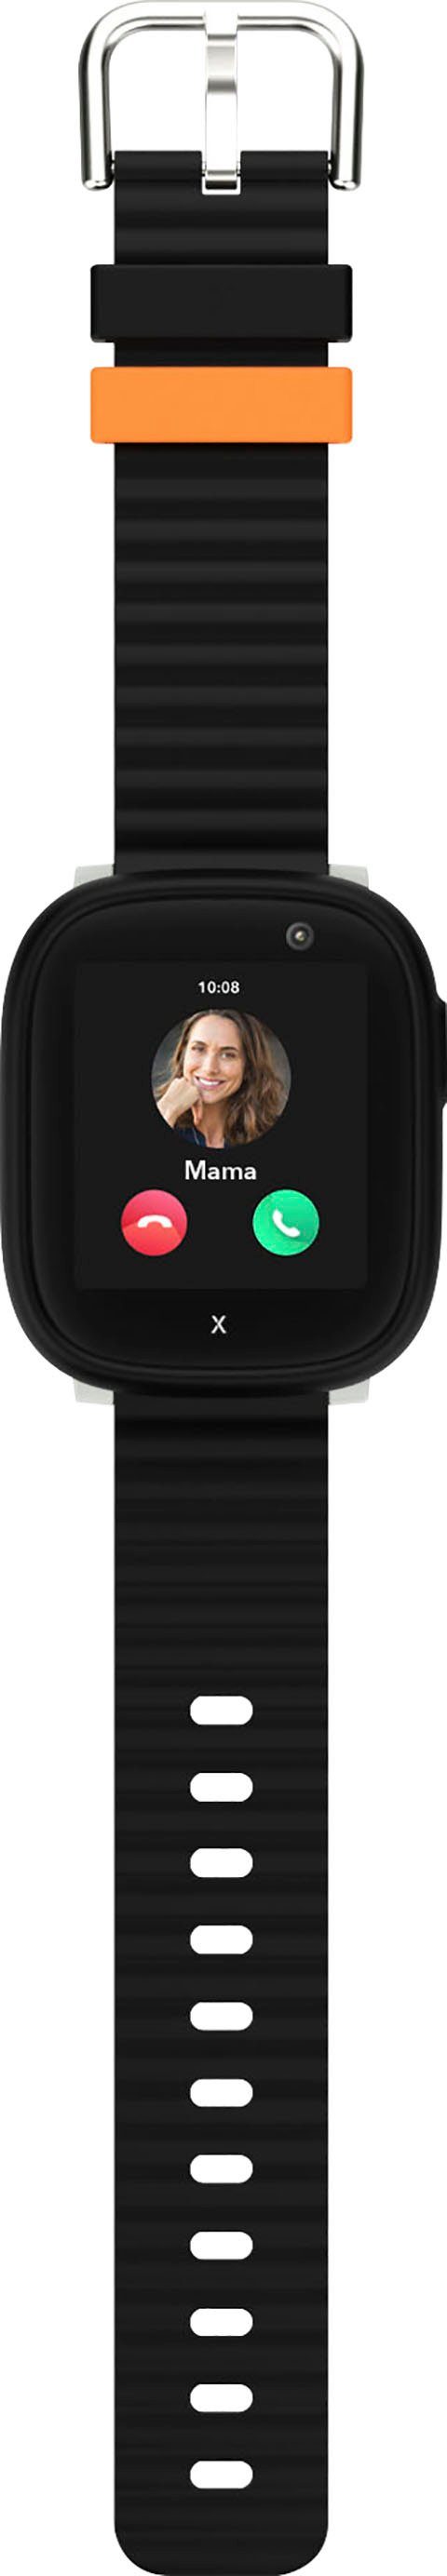 cm/1,52 Wear) Android schwarz/schwarz Kinder- X6Play Xplora (3,86 Zoll, Smartwatch